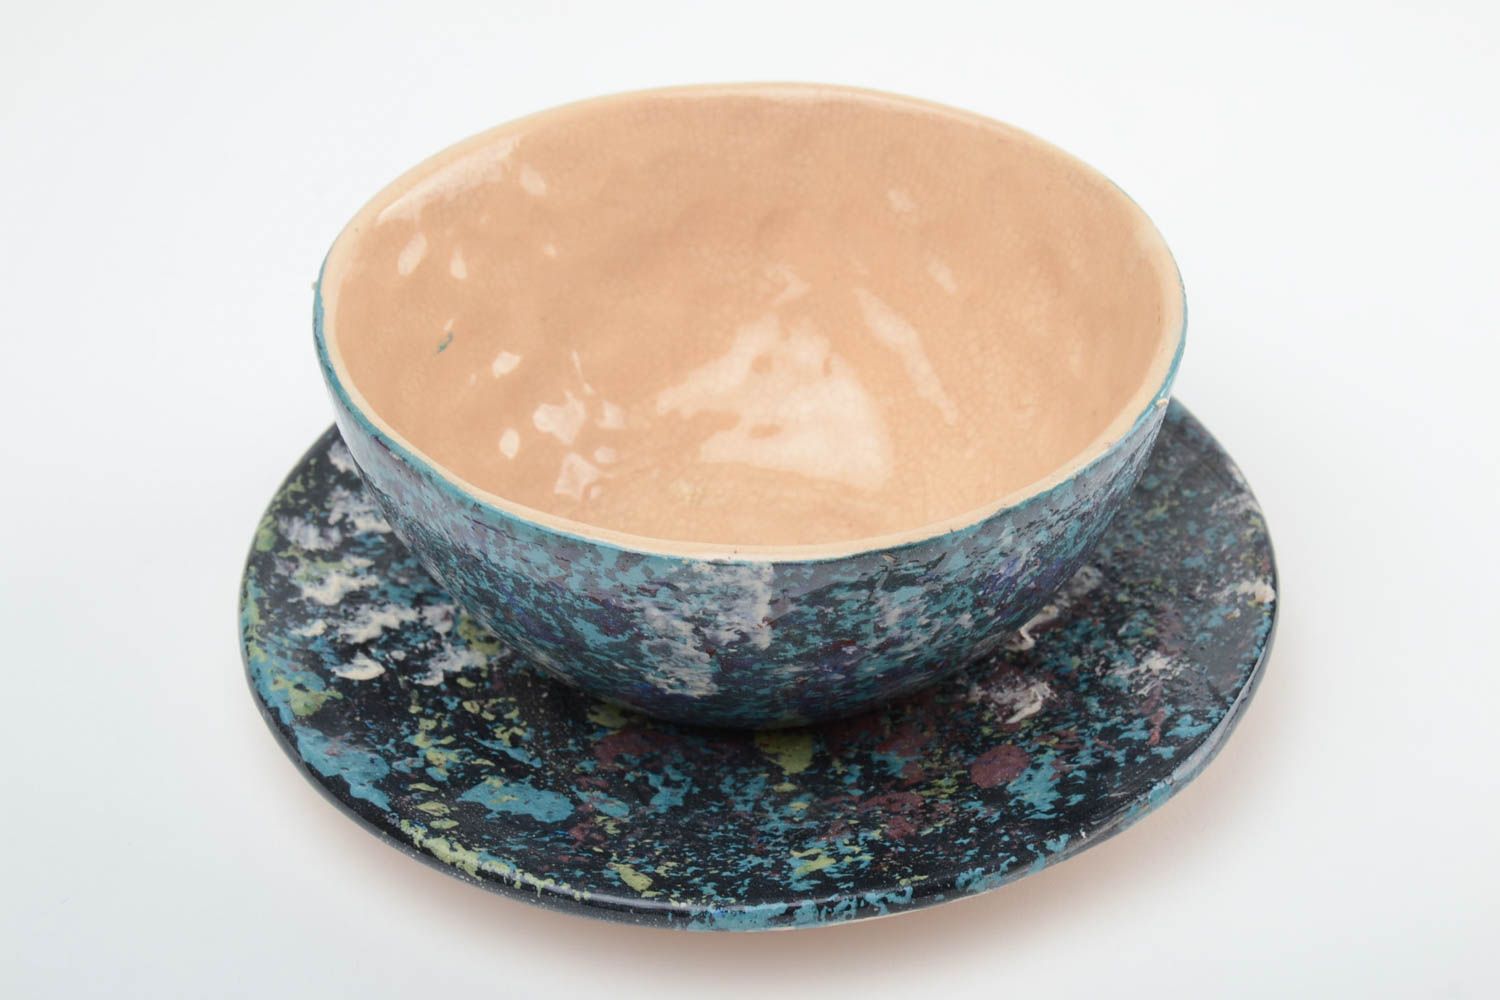 Тарелка с блюдцем для супа комплект темного цвета из глины красивые хэнд мейд фото 2